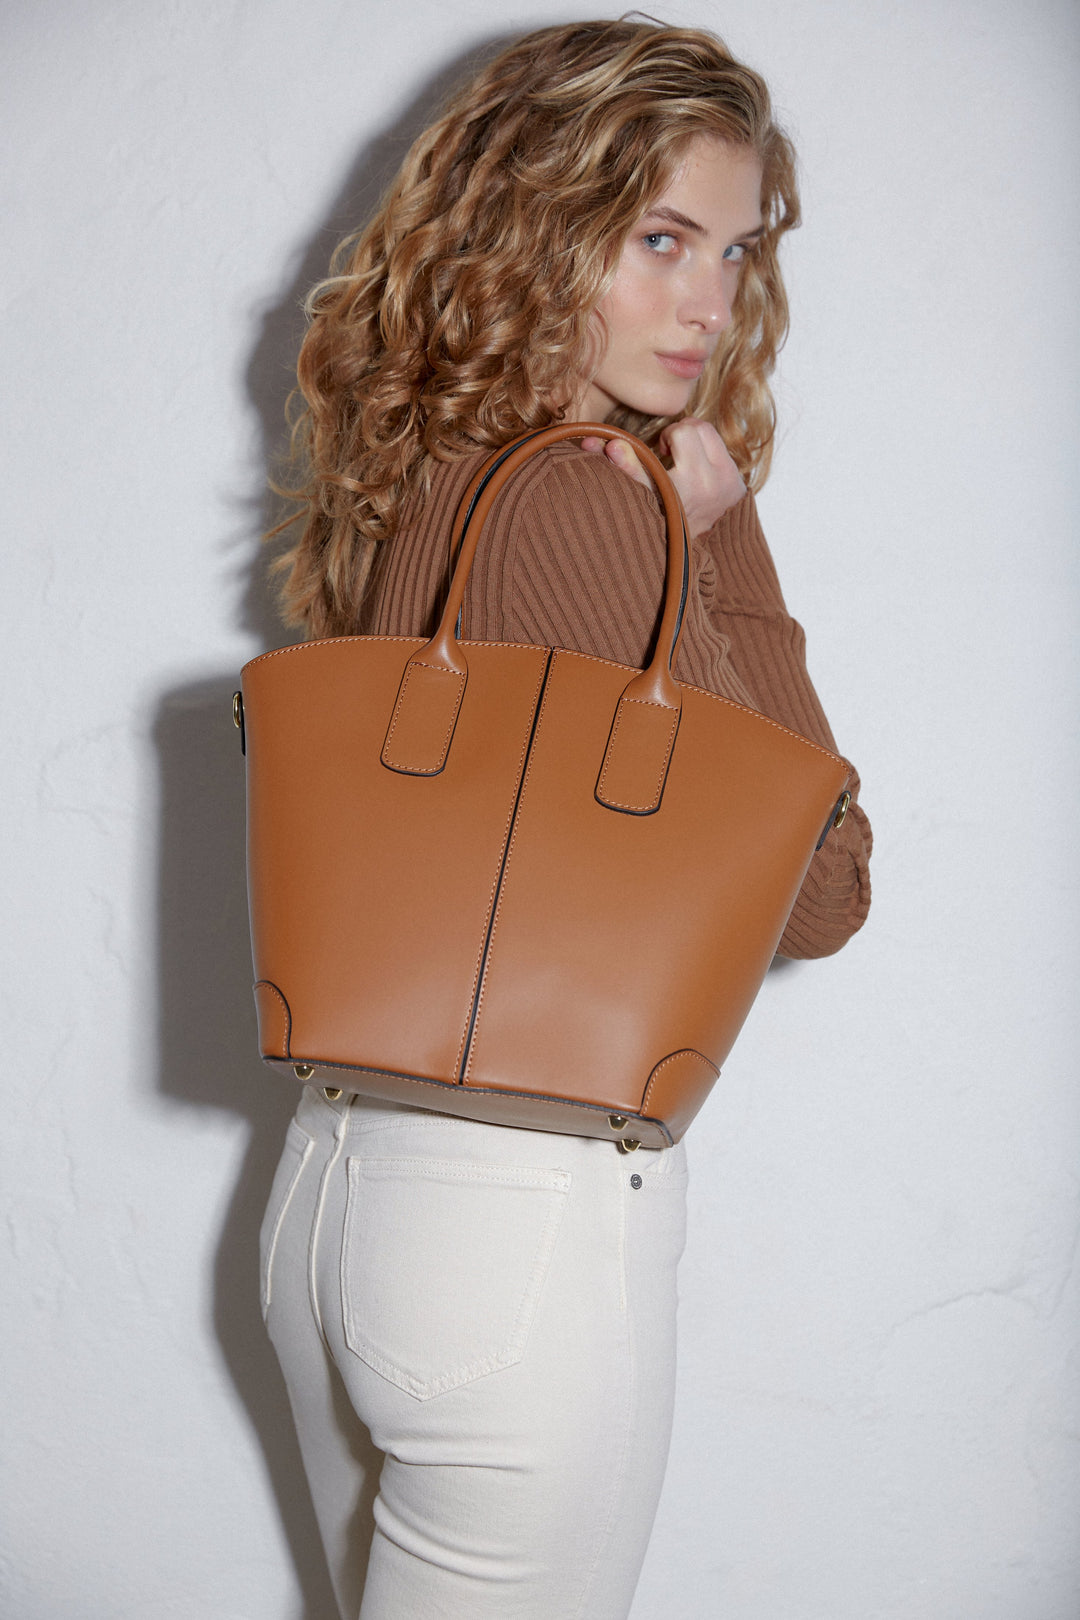 Brązowa torebka damska typu shopper z włoskiej skóry naturalnej Estro - pełna stylizacja.